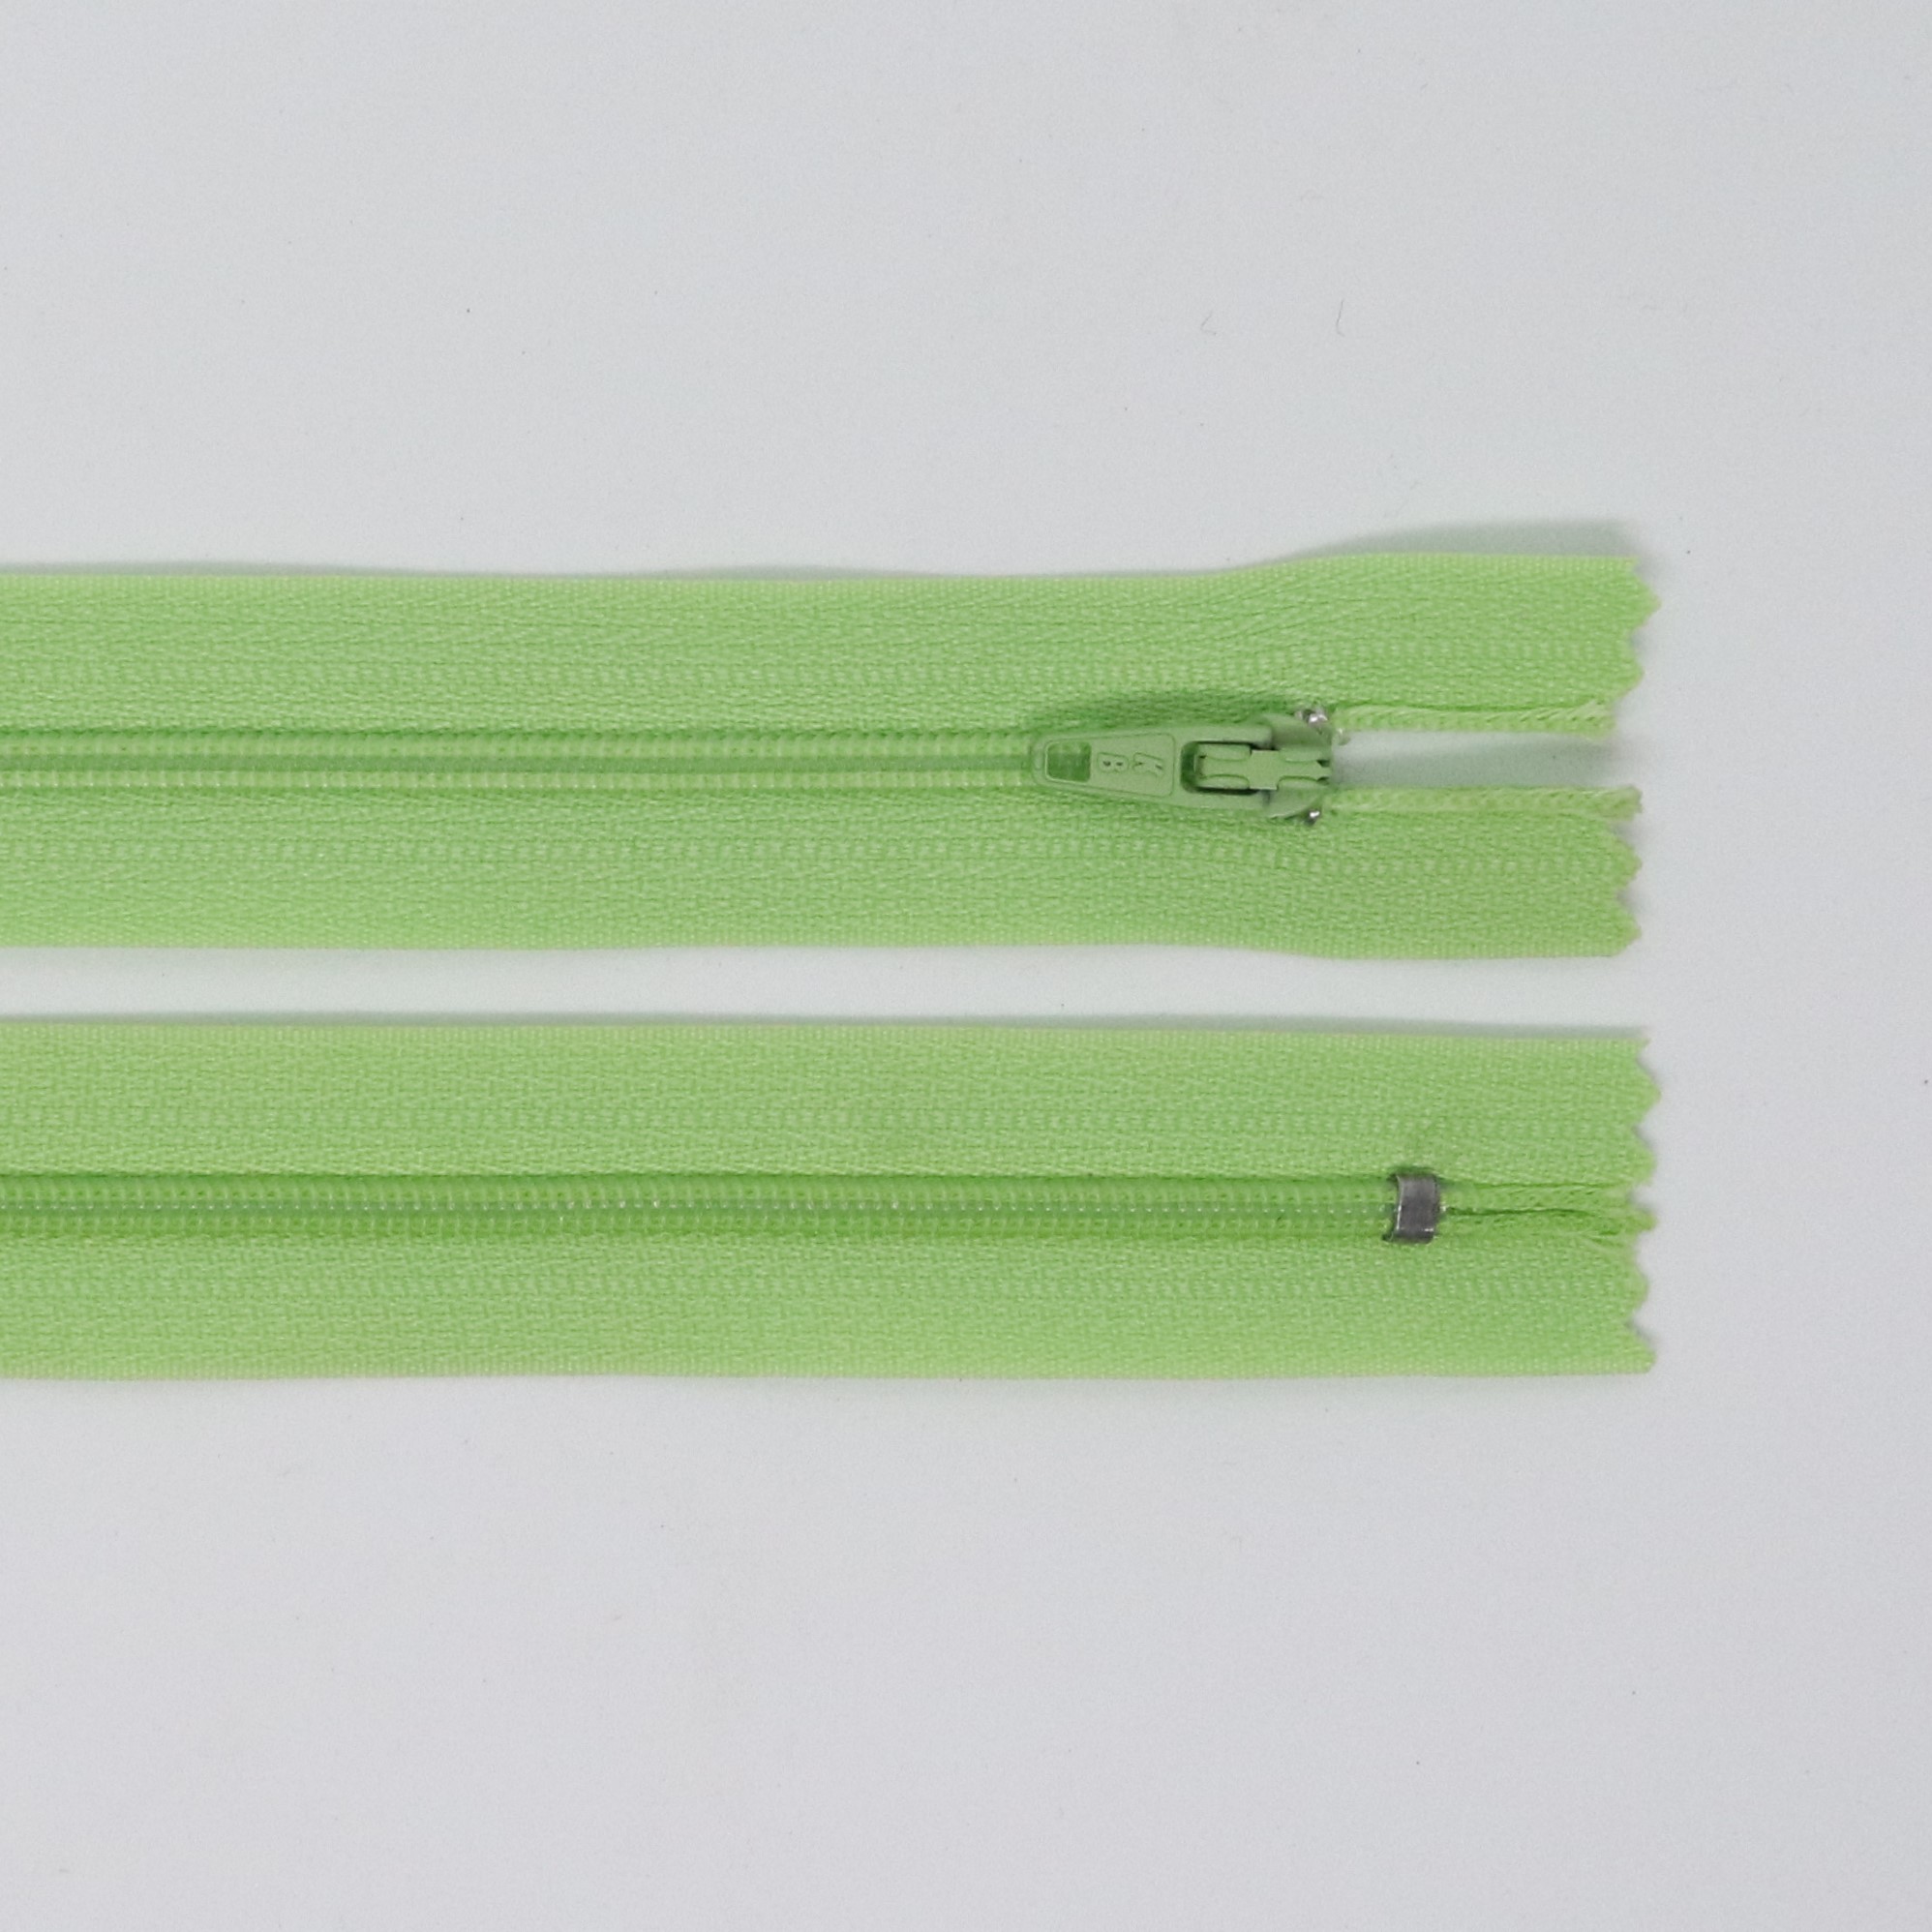 Spirálový zip, šíøe 3 mm, délka 60 cm, svìtle zelená - zvìtšit obrázek